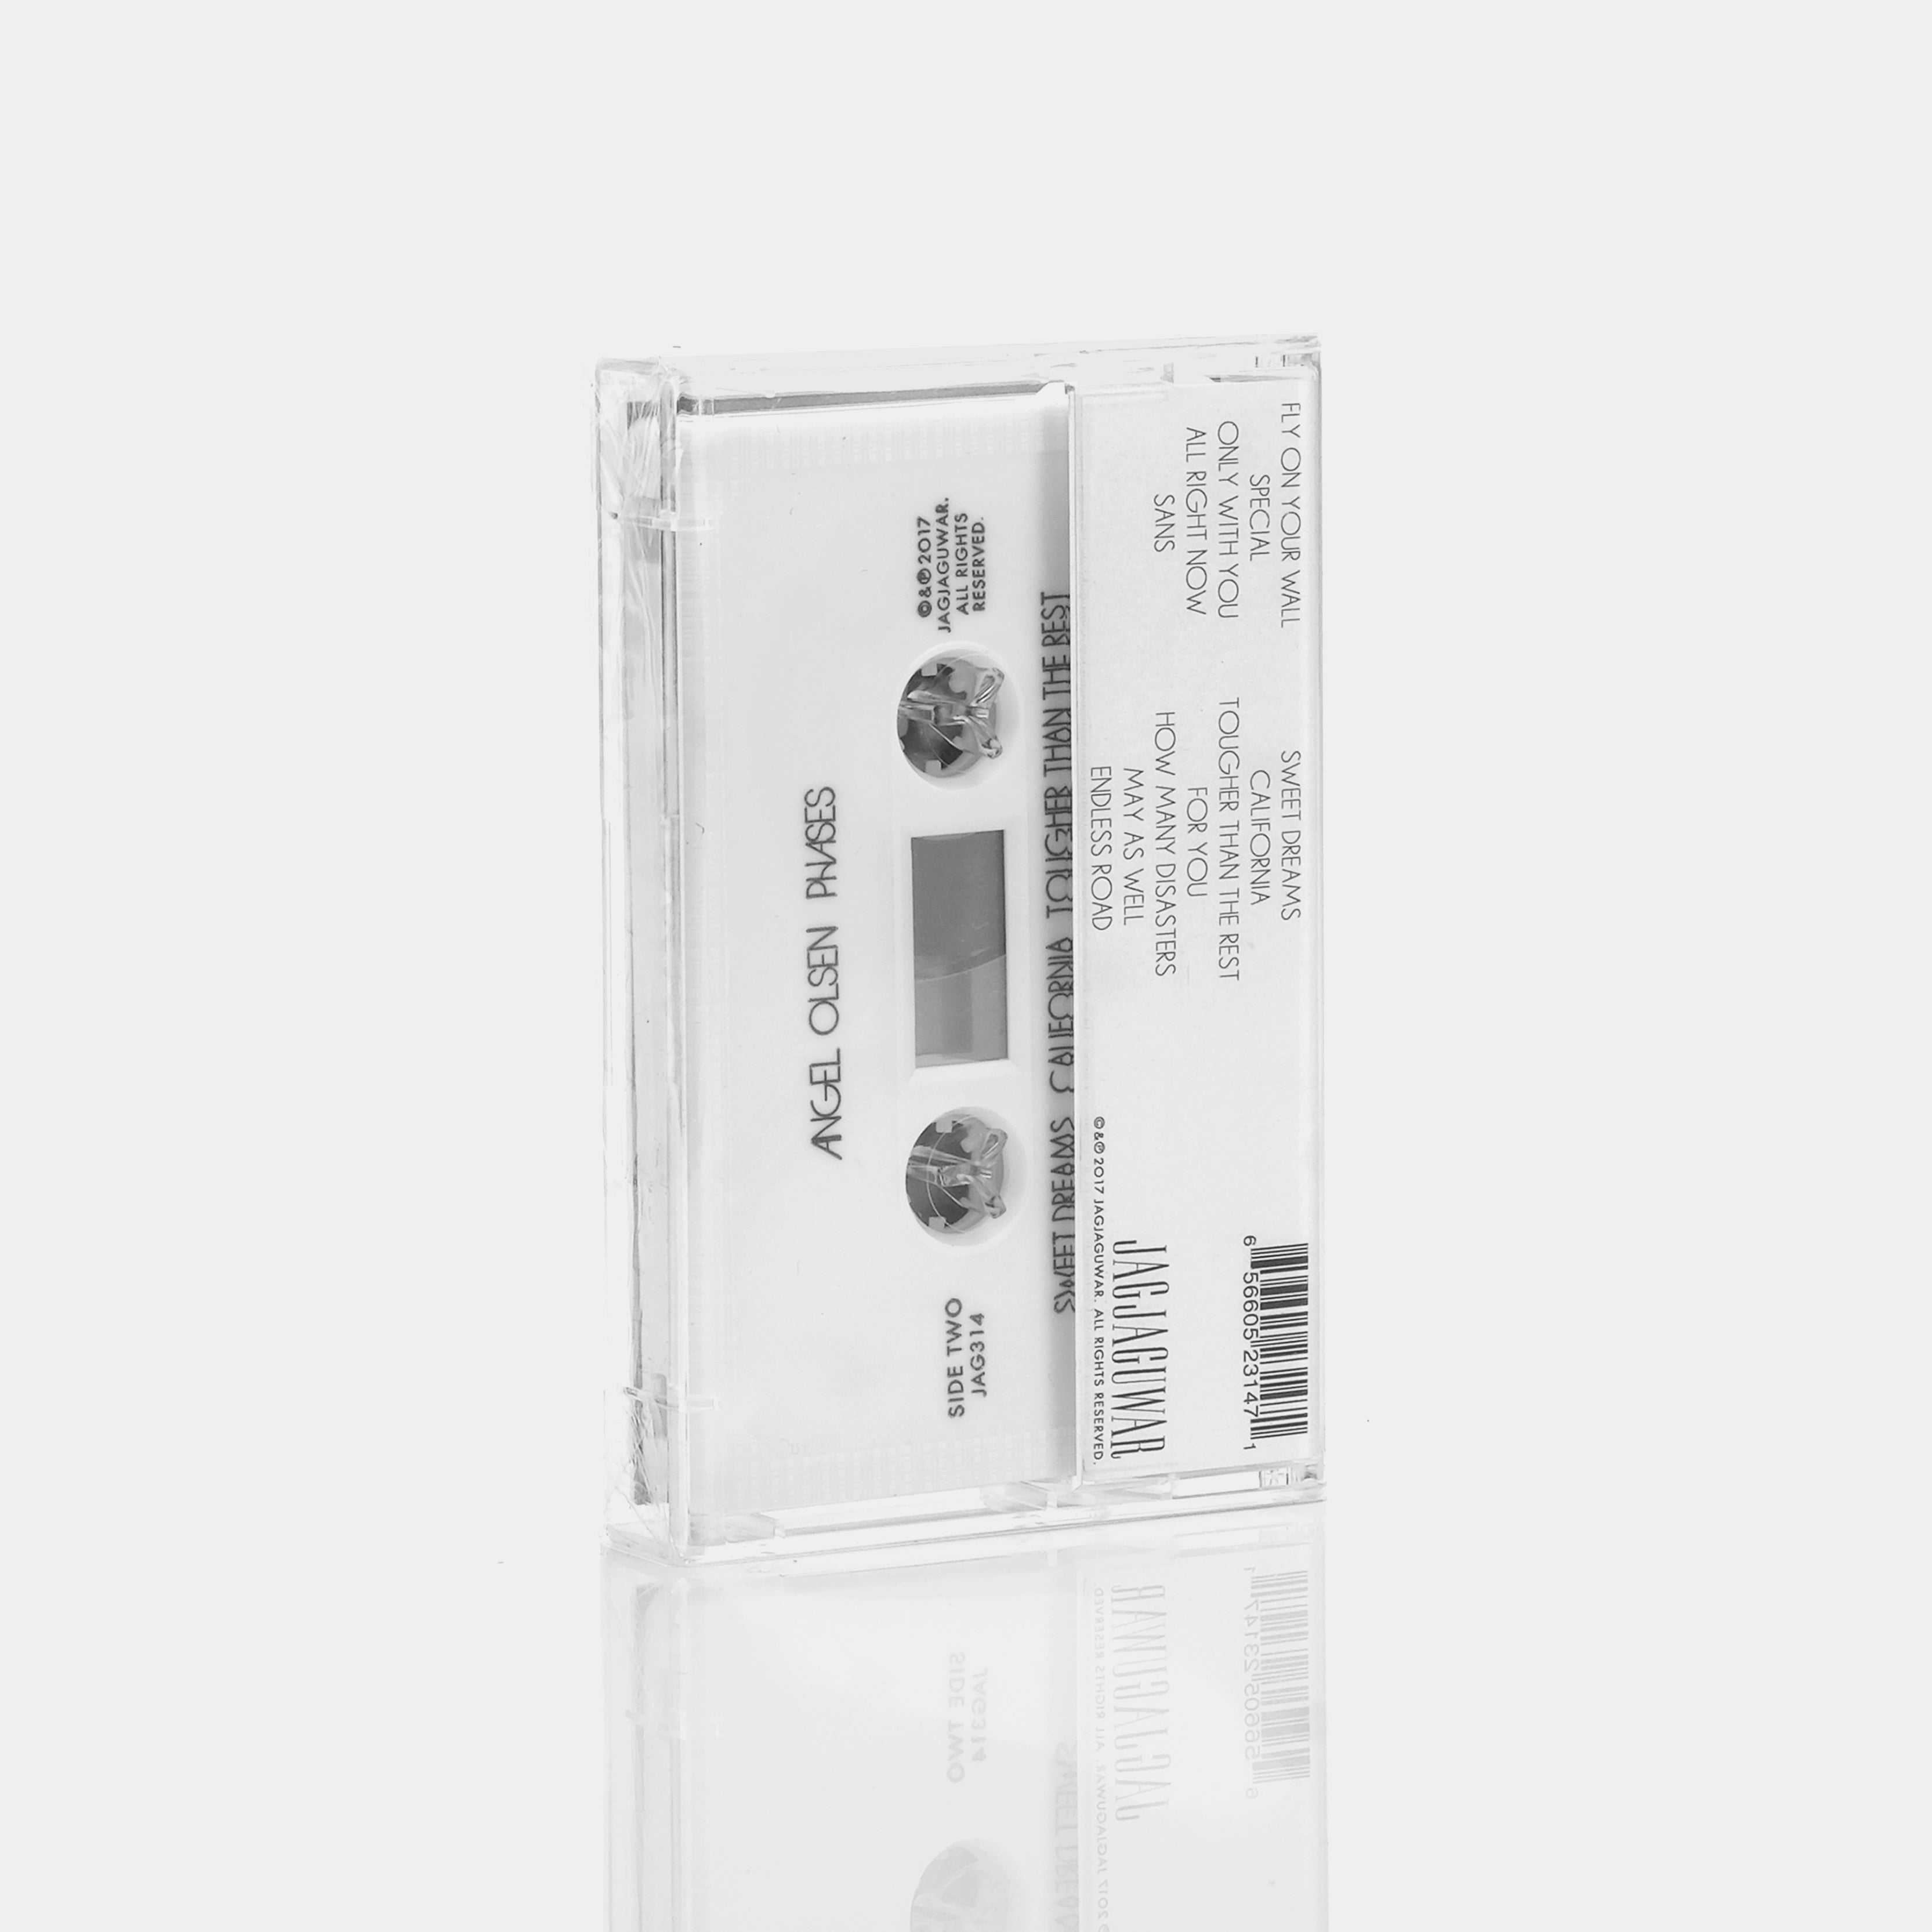 Angel Olsen - Phases Cassette Tape